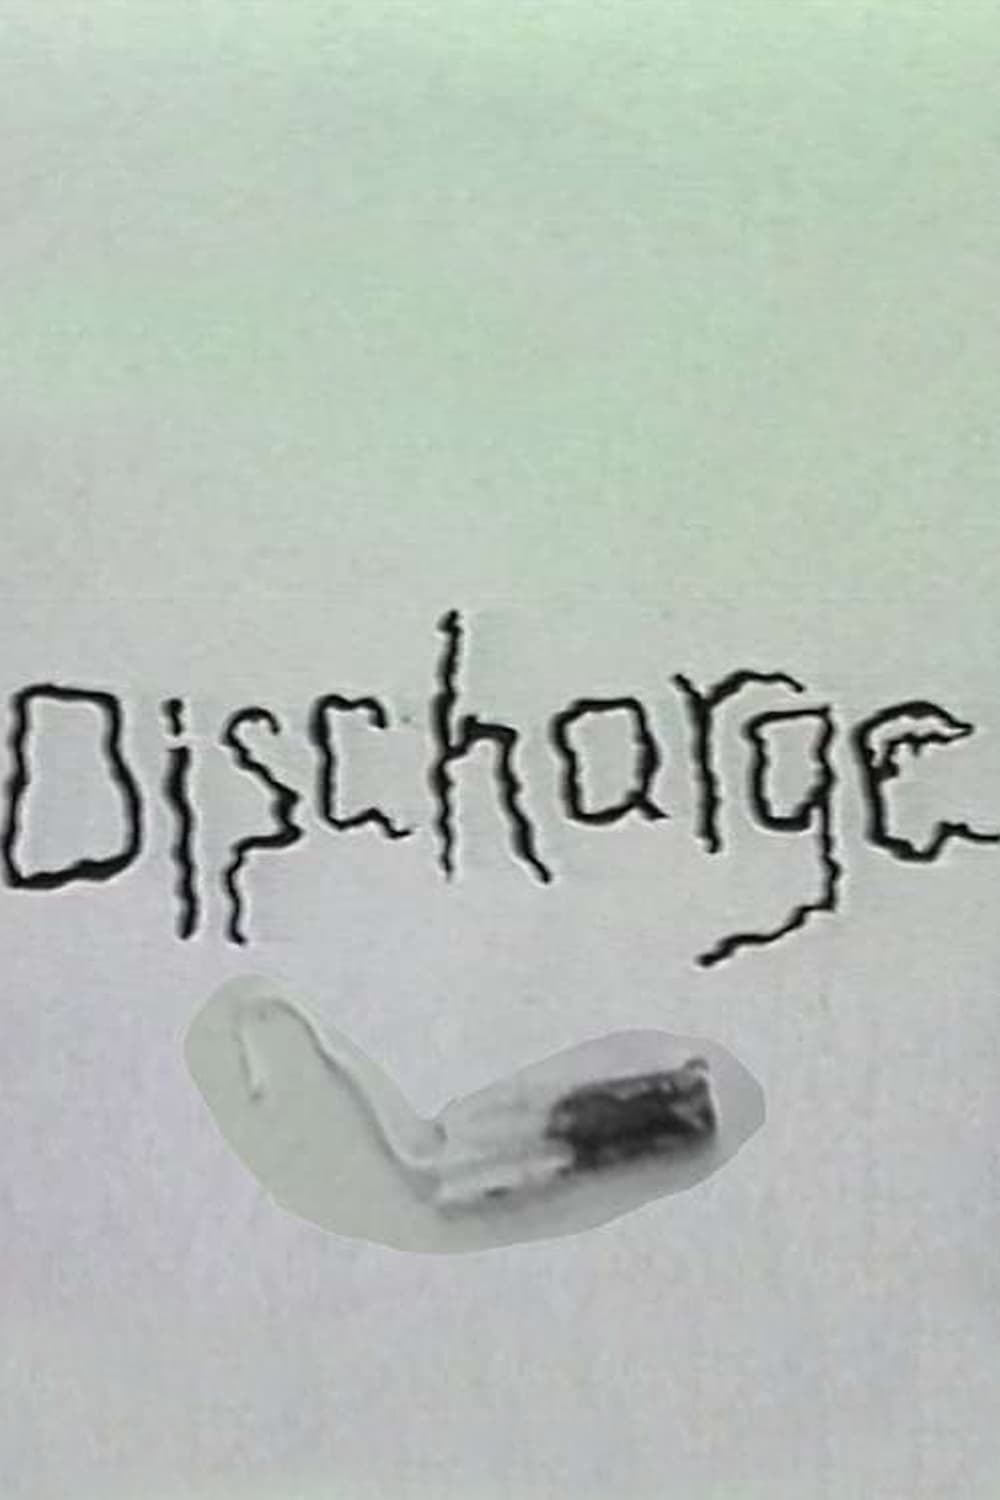 Discharge